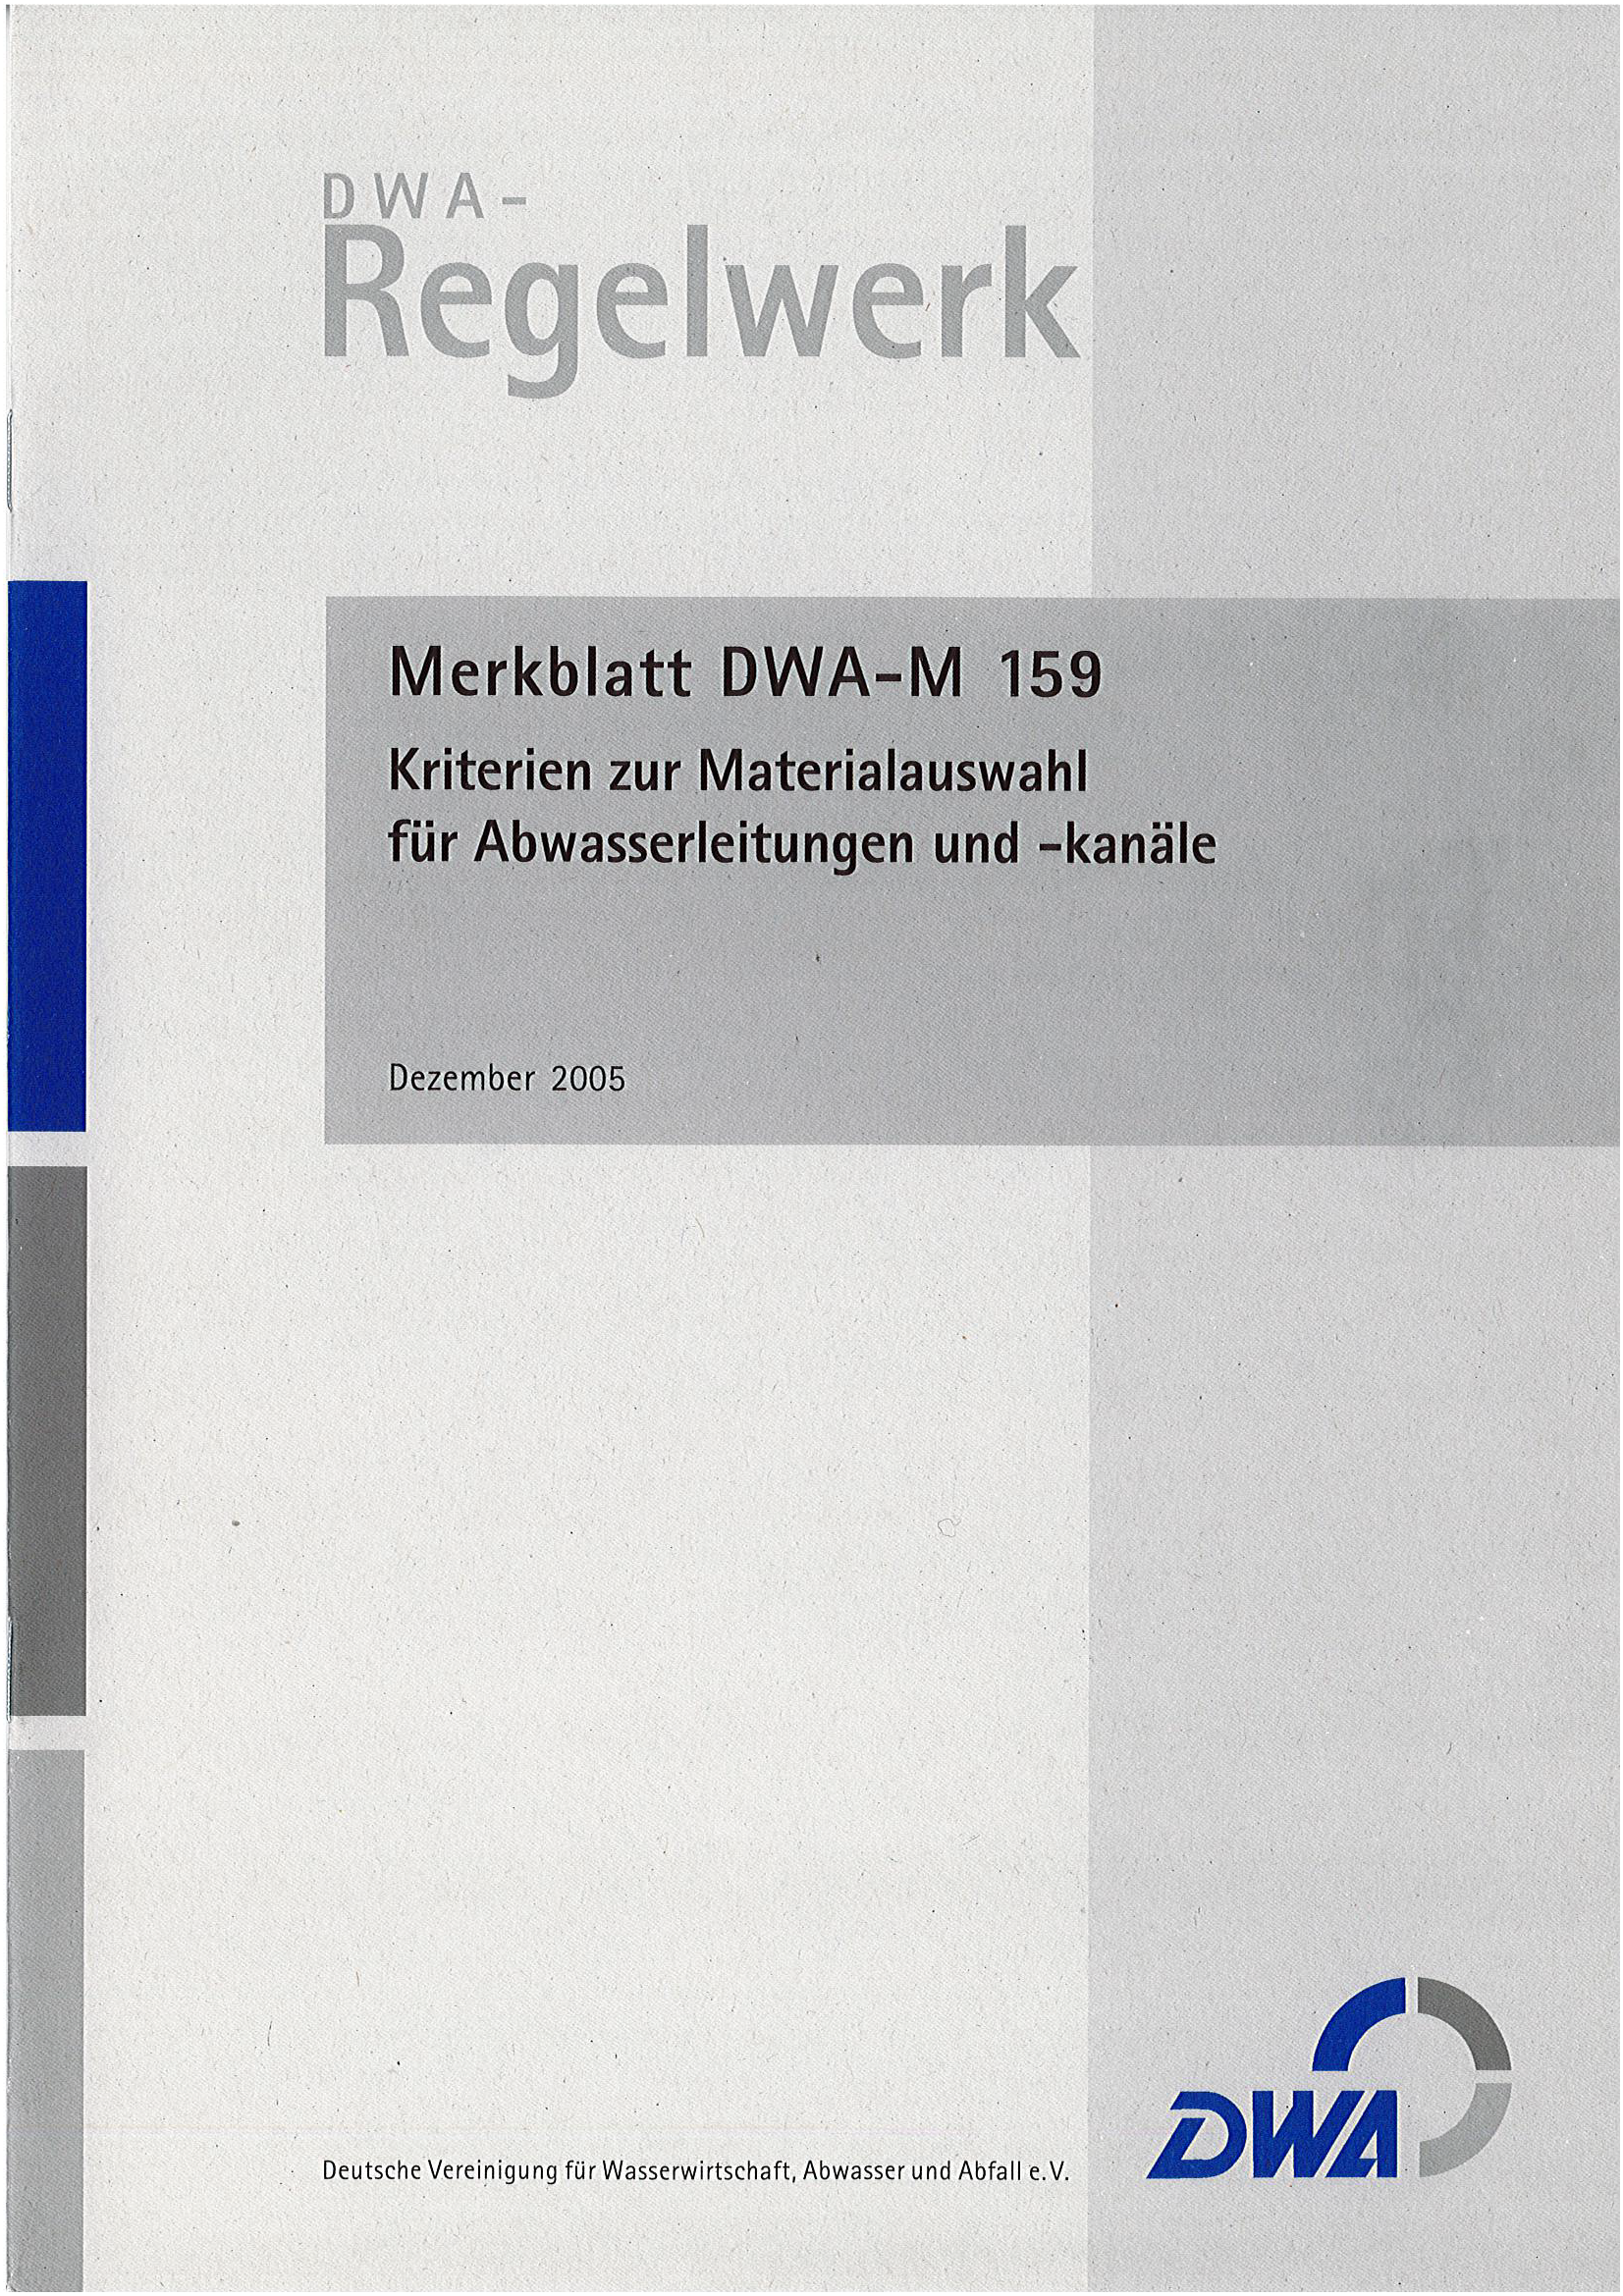 DWA-M 159 -Kriterien zur Materialauswahl für Abwasserleitungen und -kanäle - Dezember 2005